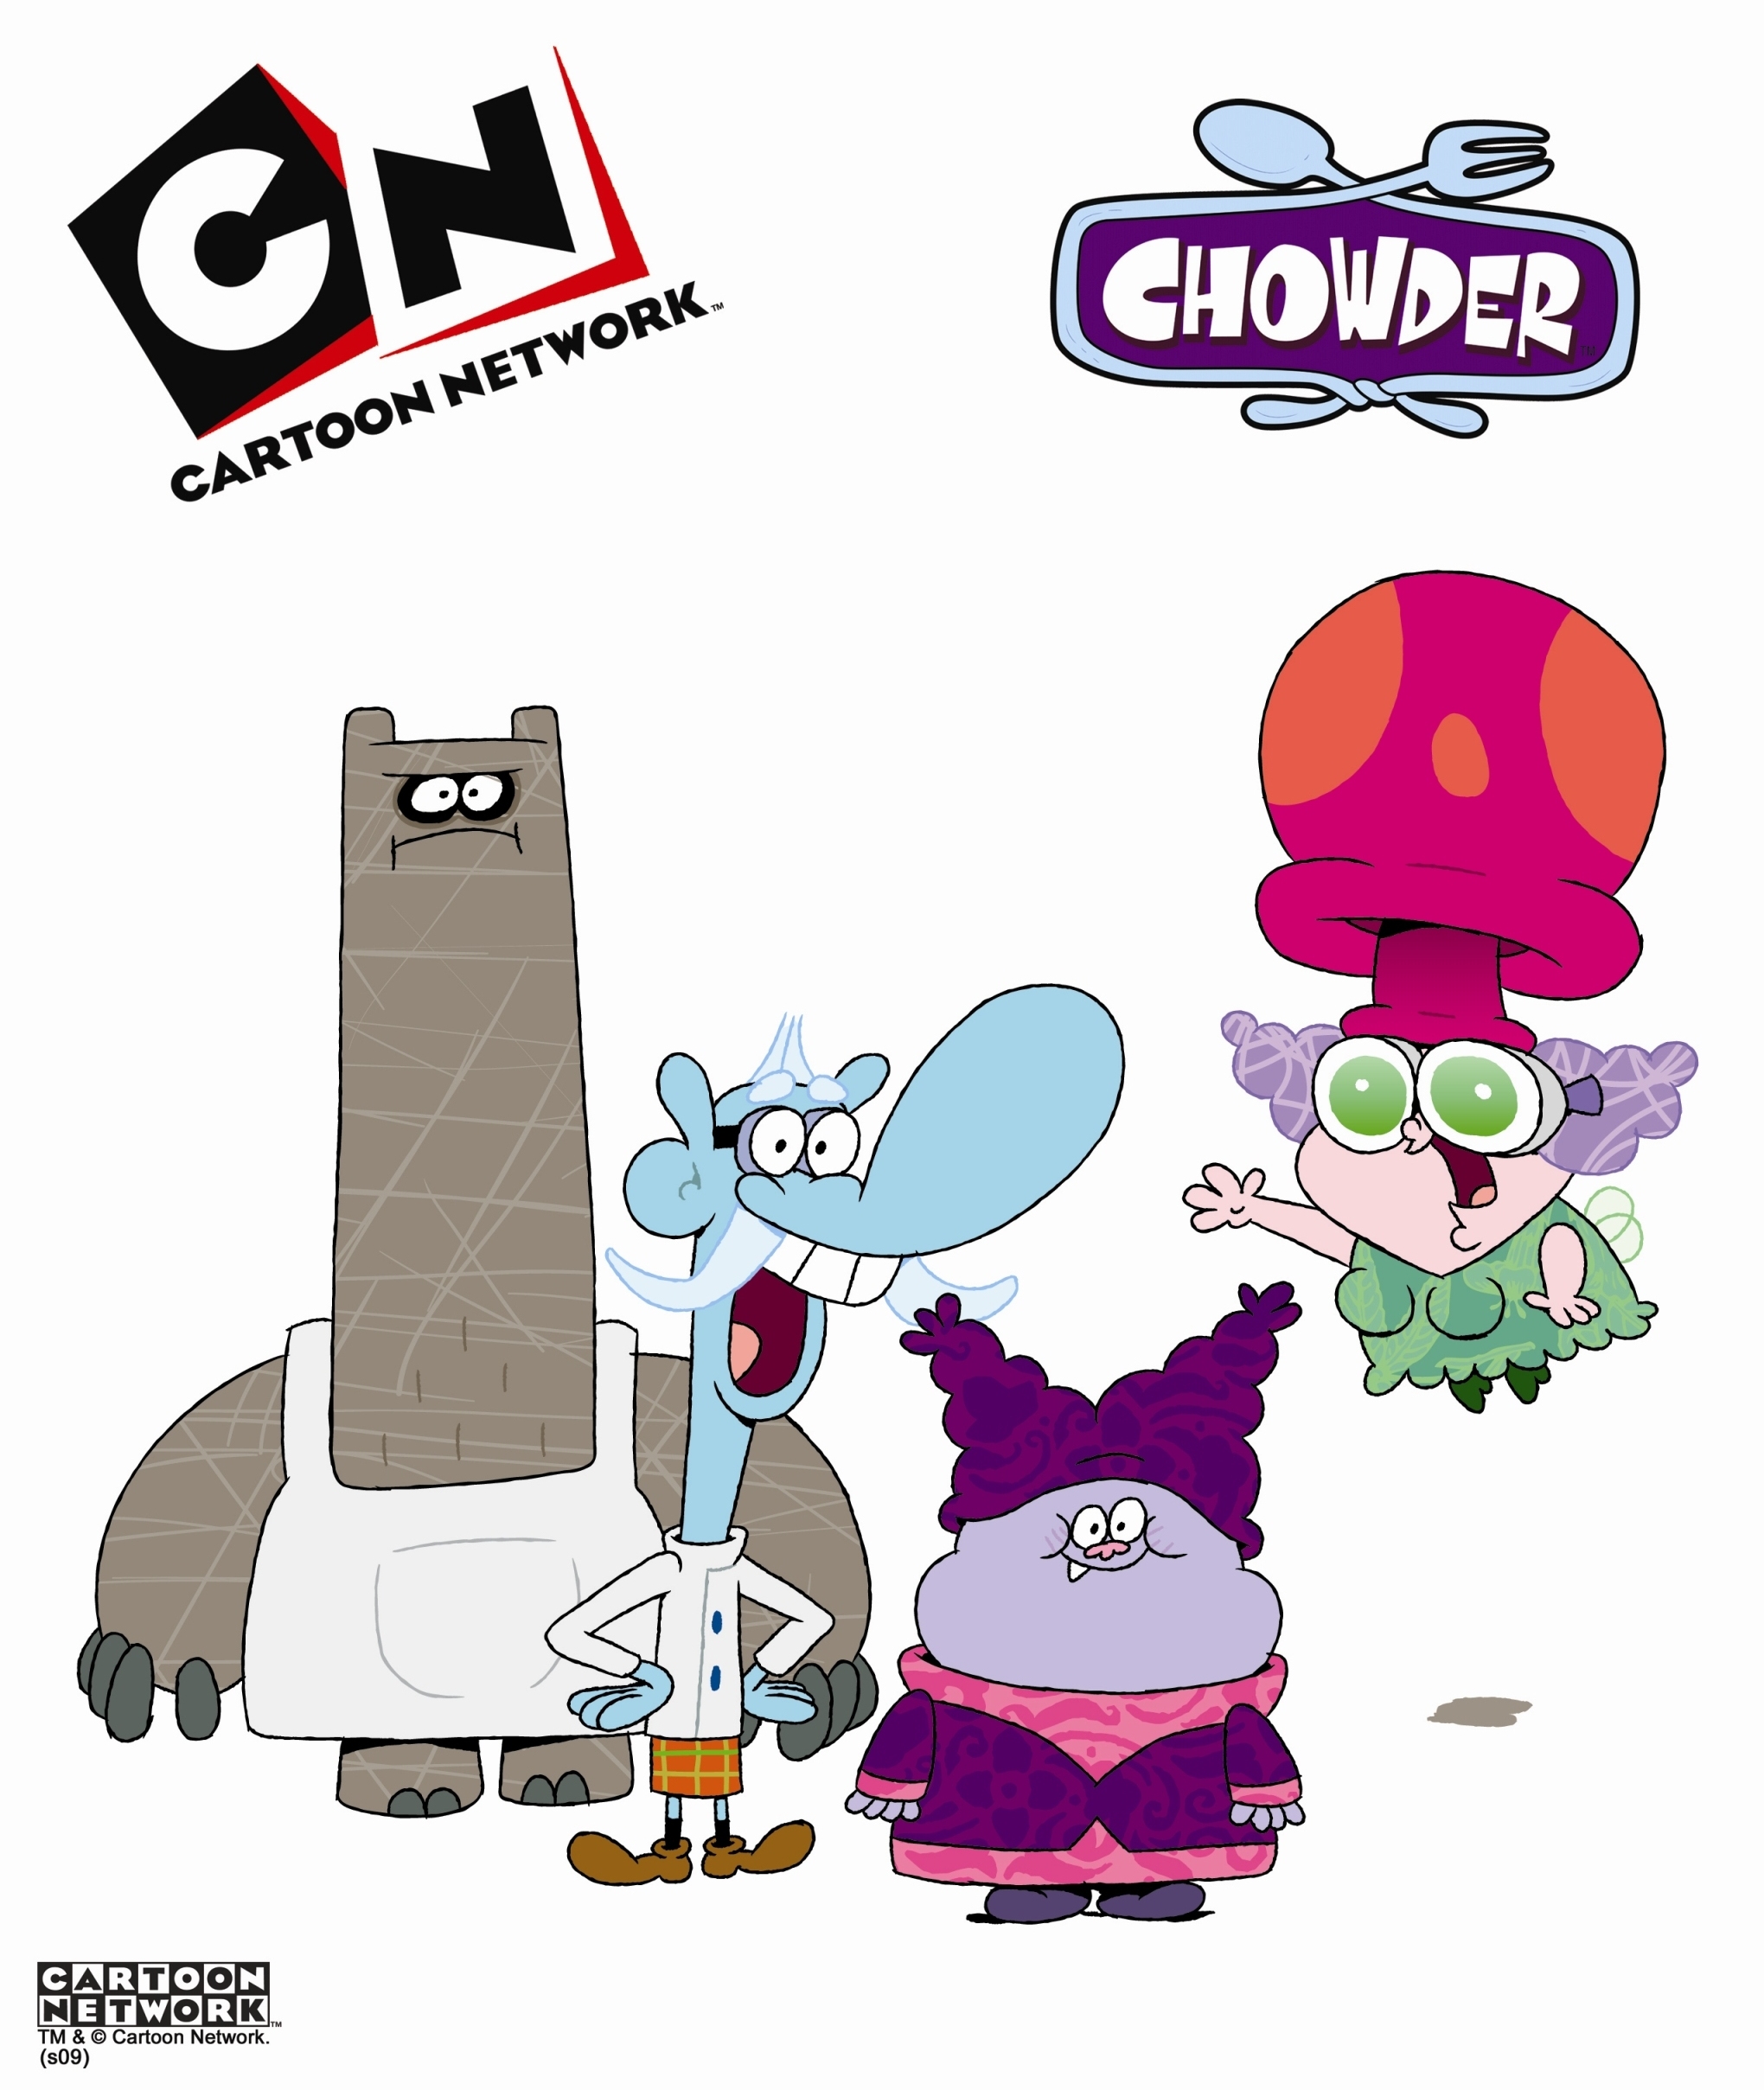 Chowder Cartoon Network